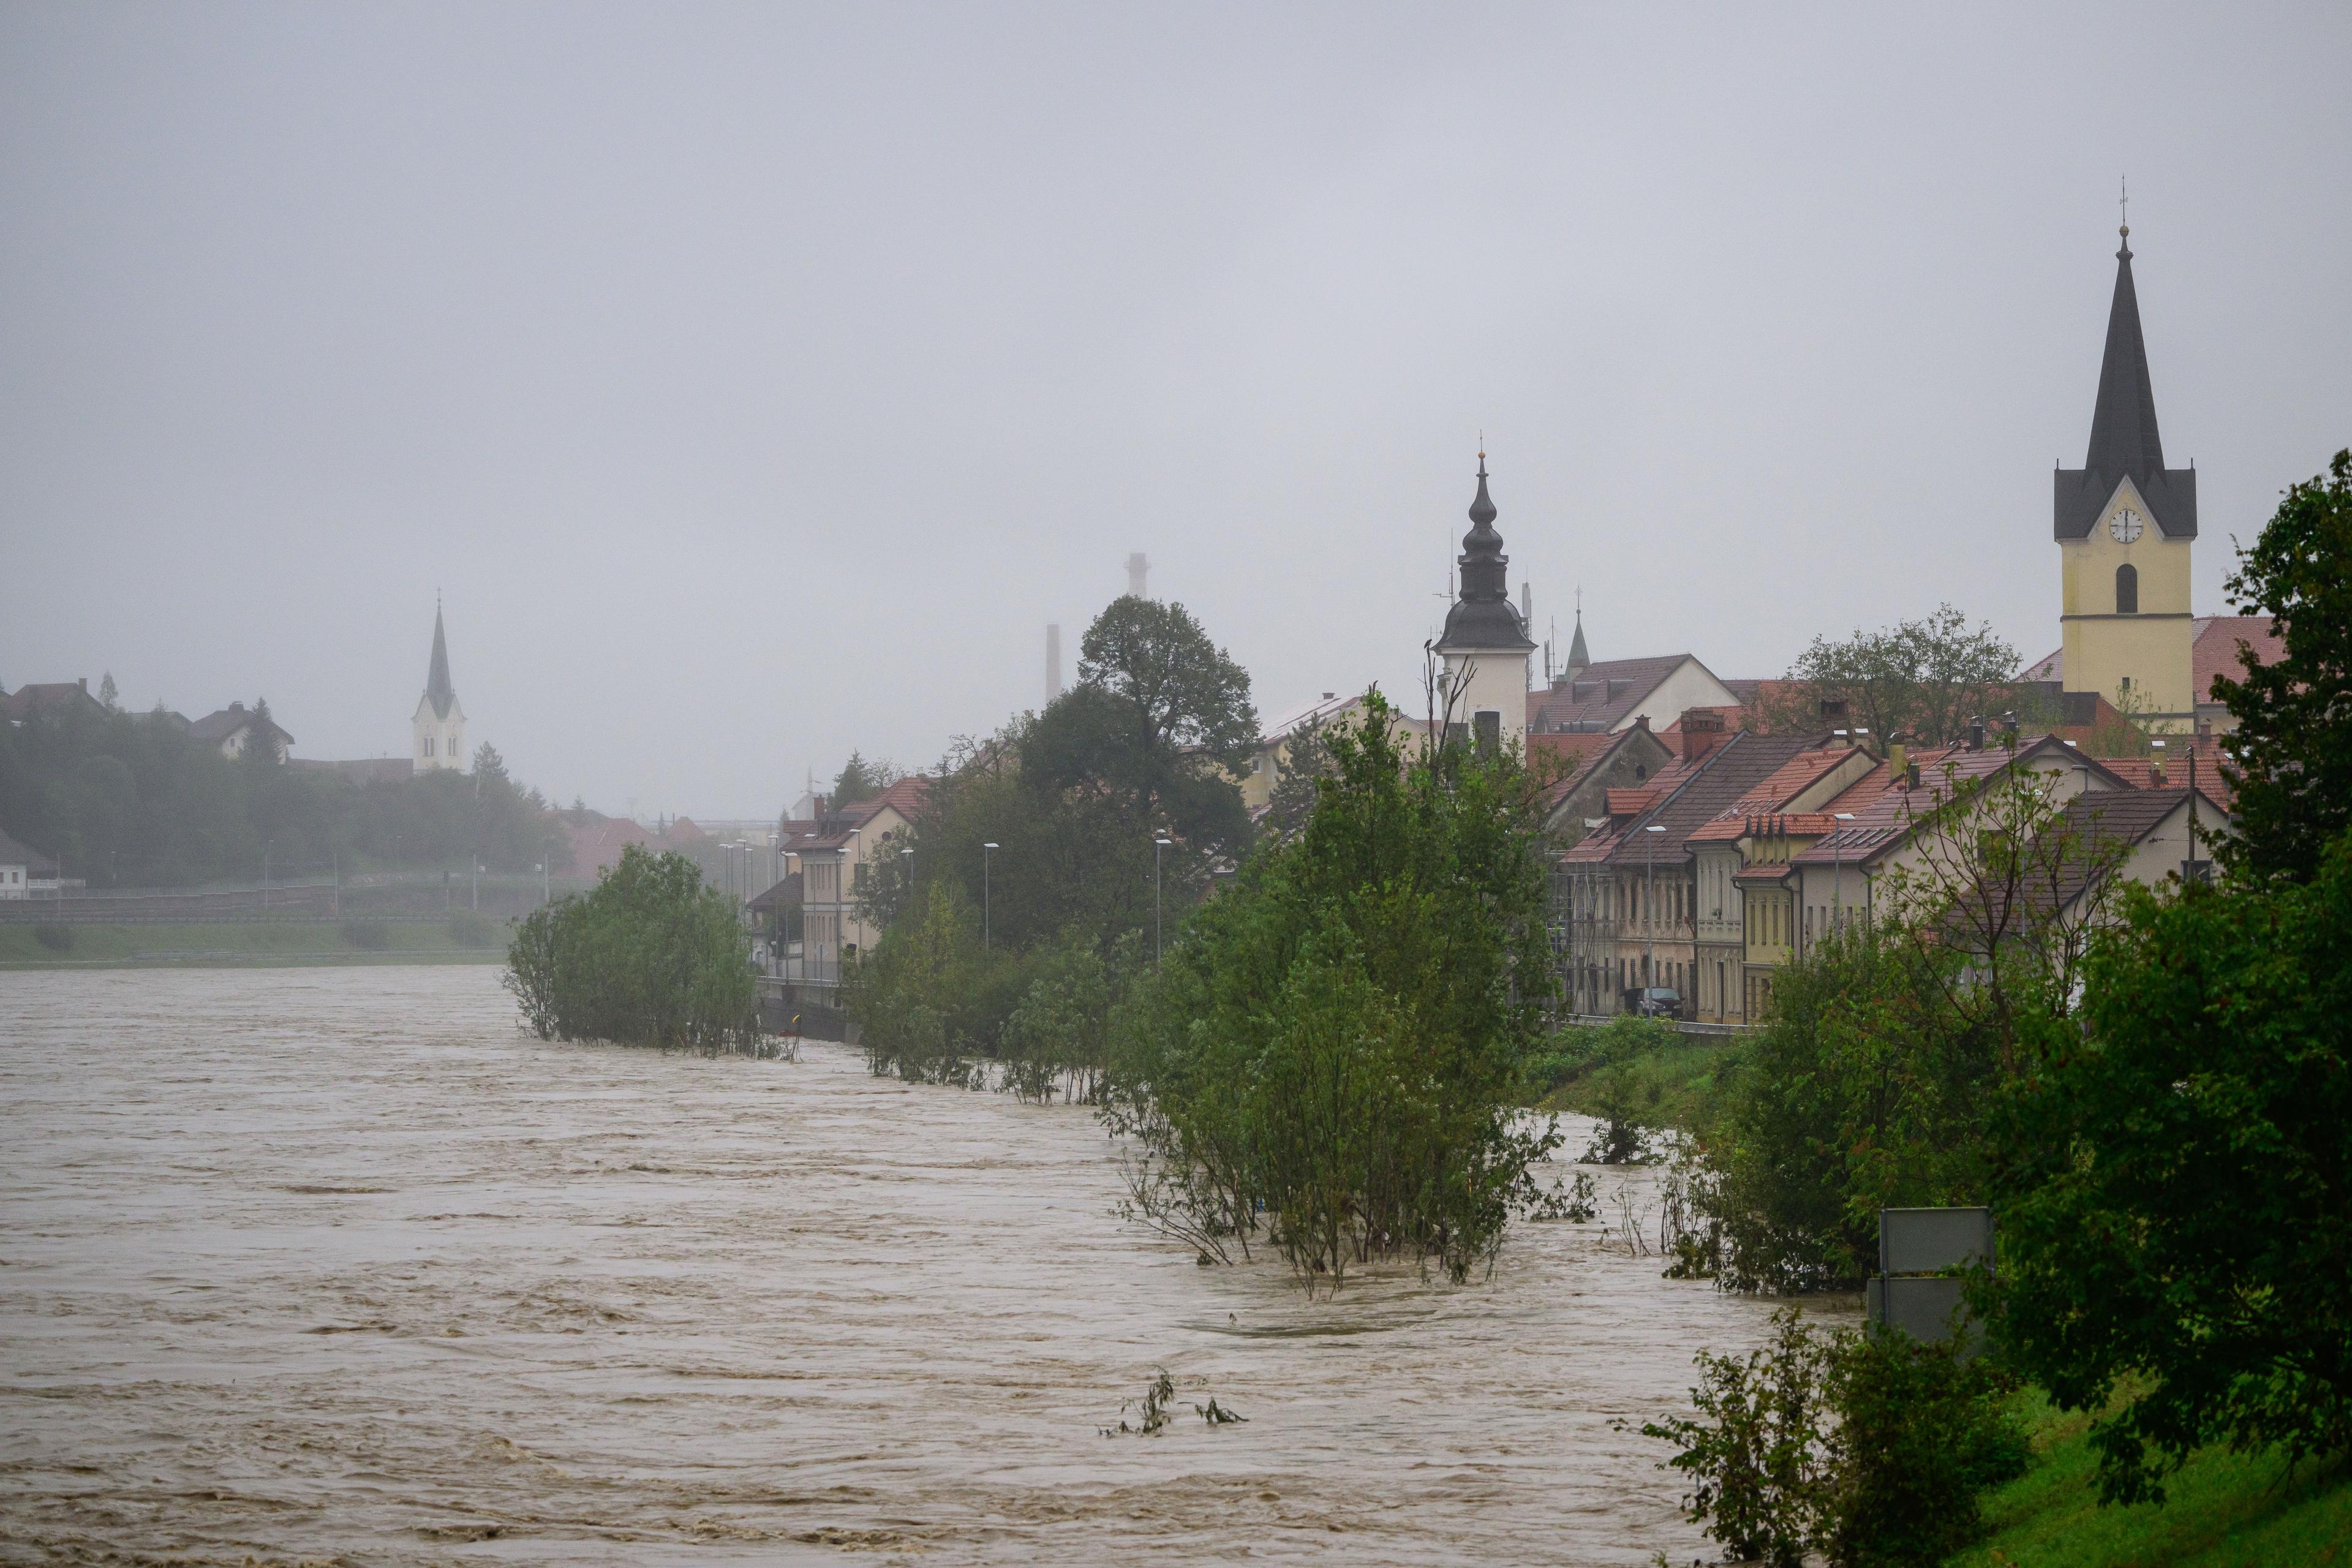 Powódź w Słowenii. Widać wezbraną rzekę zalewającą małe miasteczko